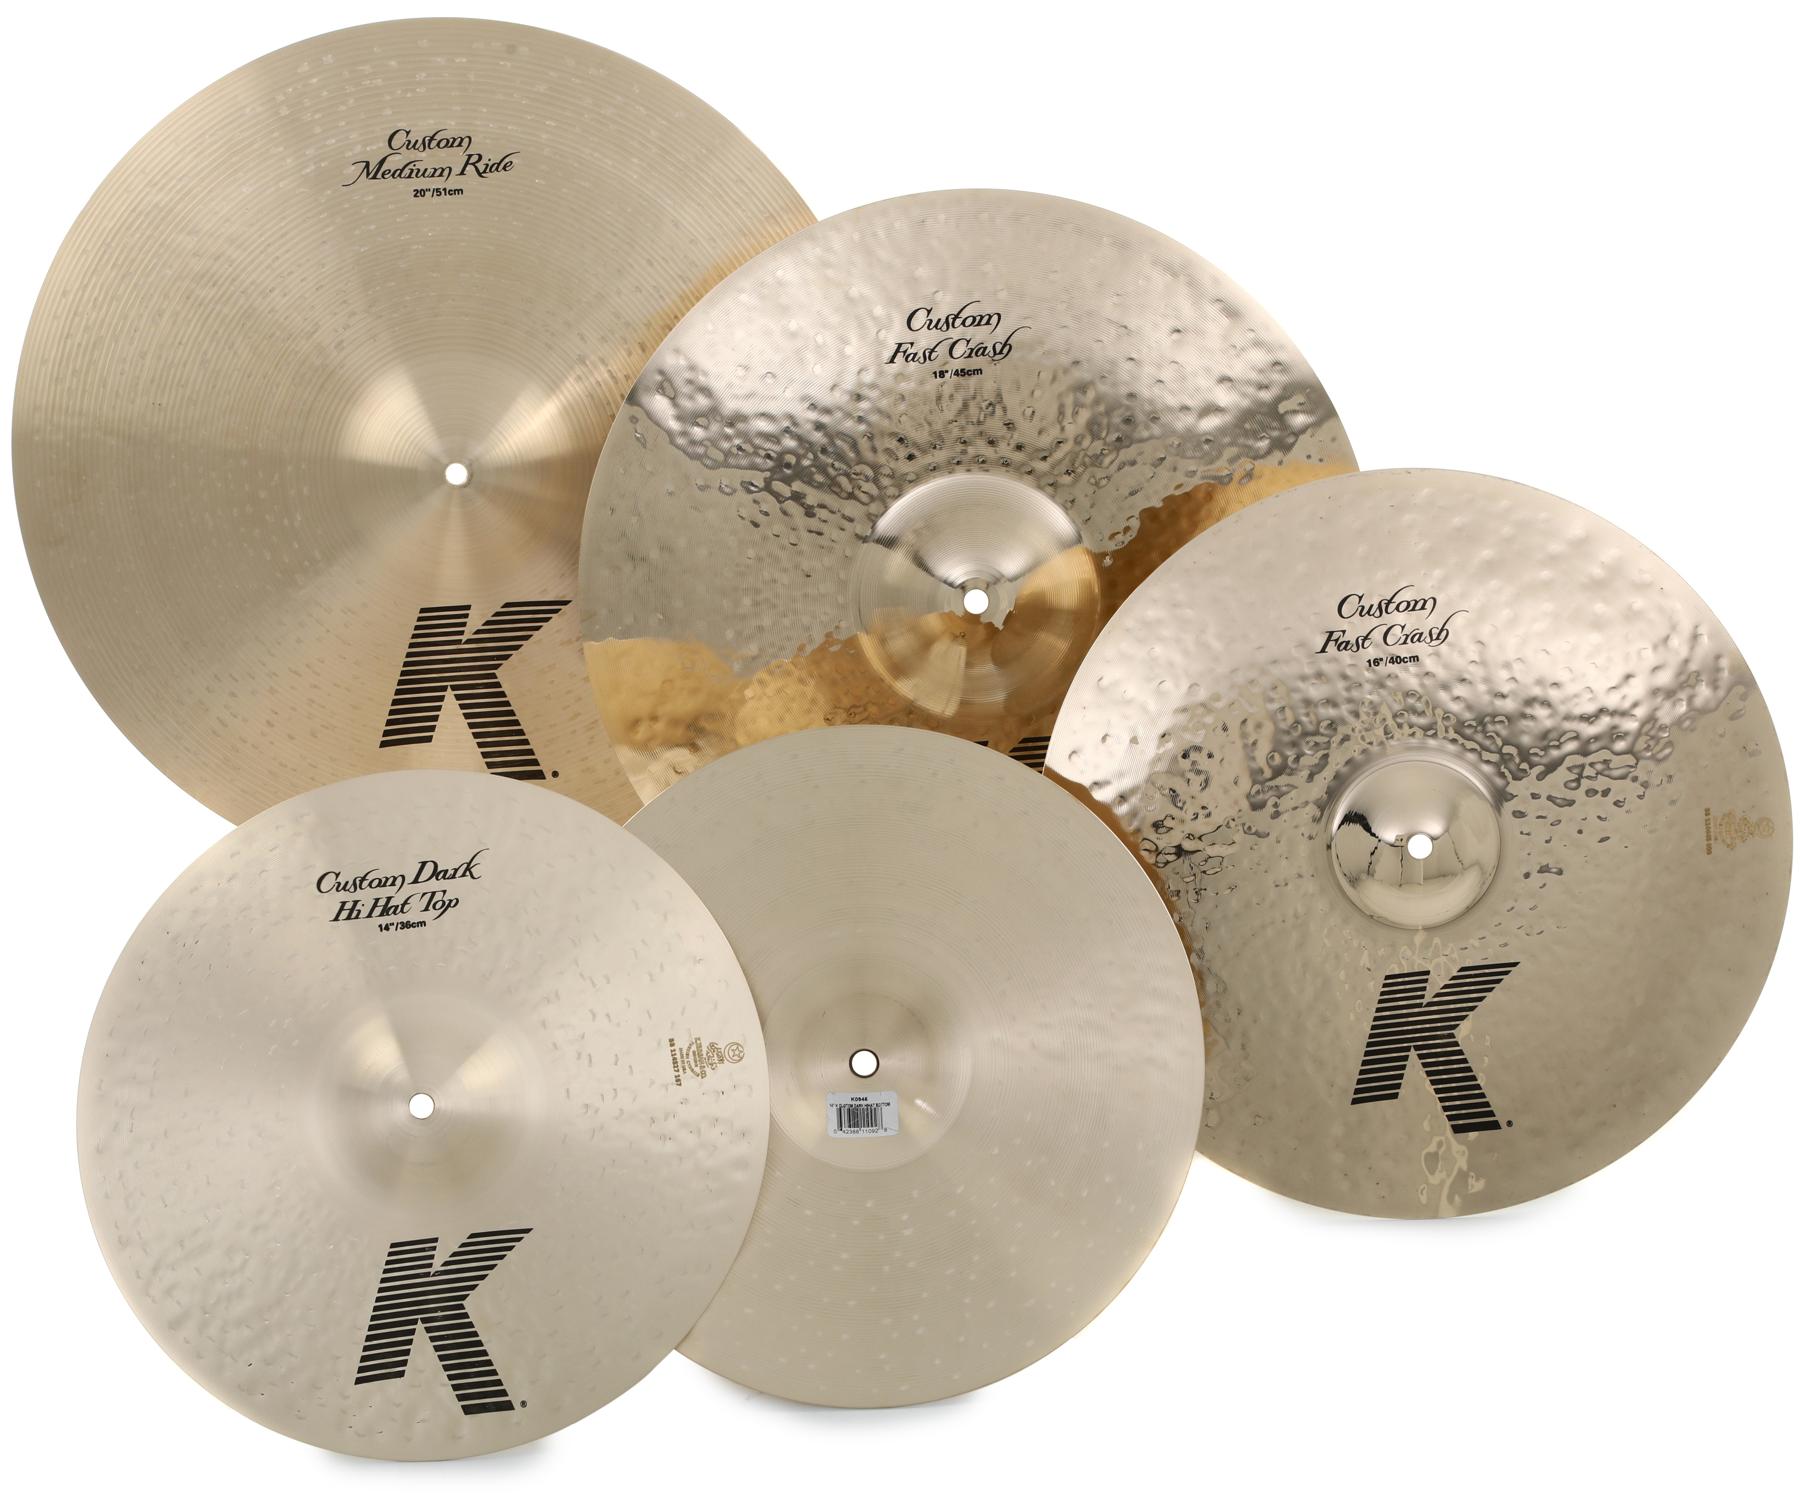 Zildjian K Custom Worship Cymbal Set - 14/16/18/20 inch